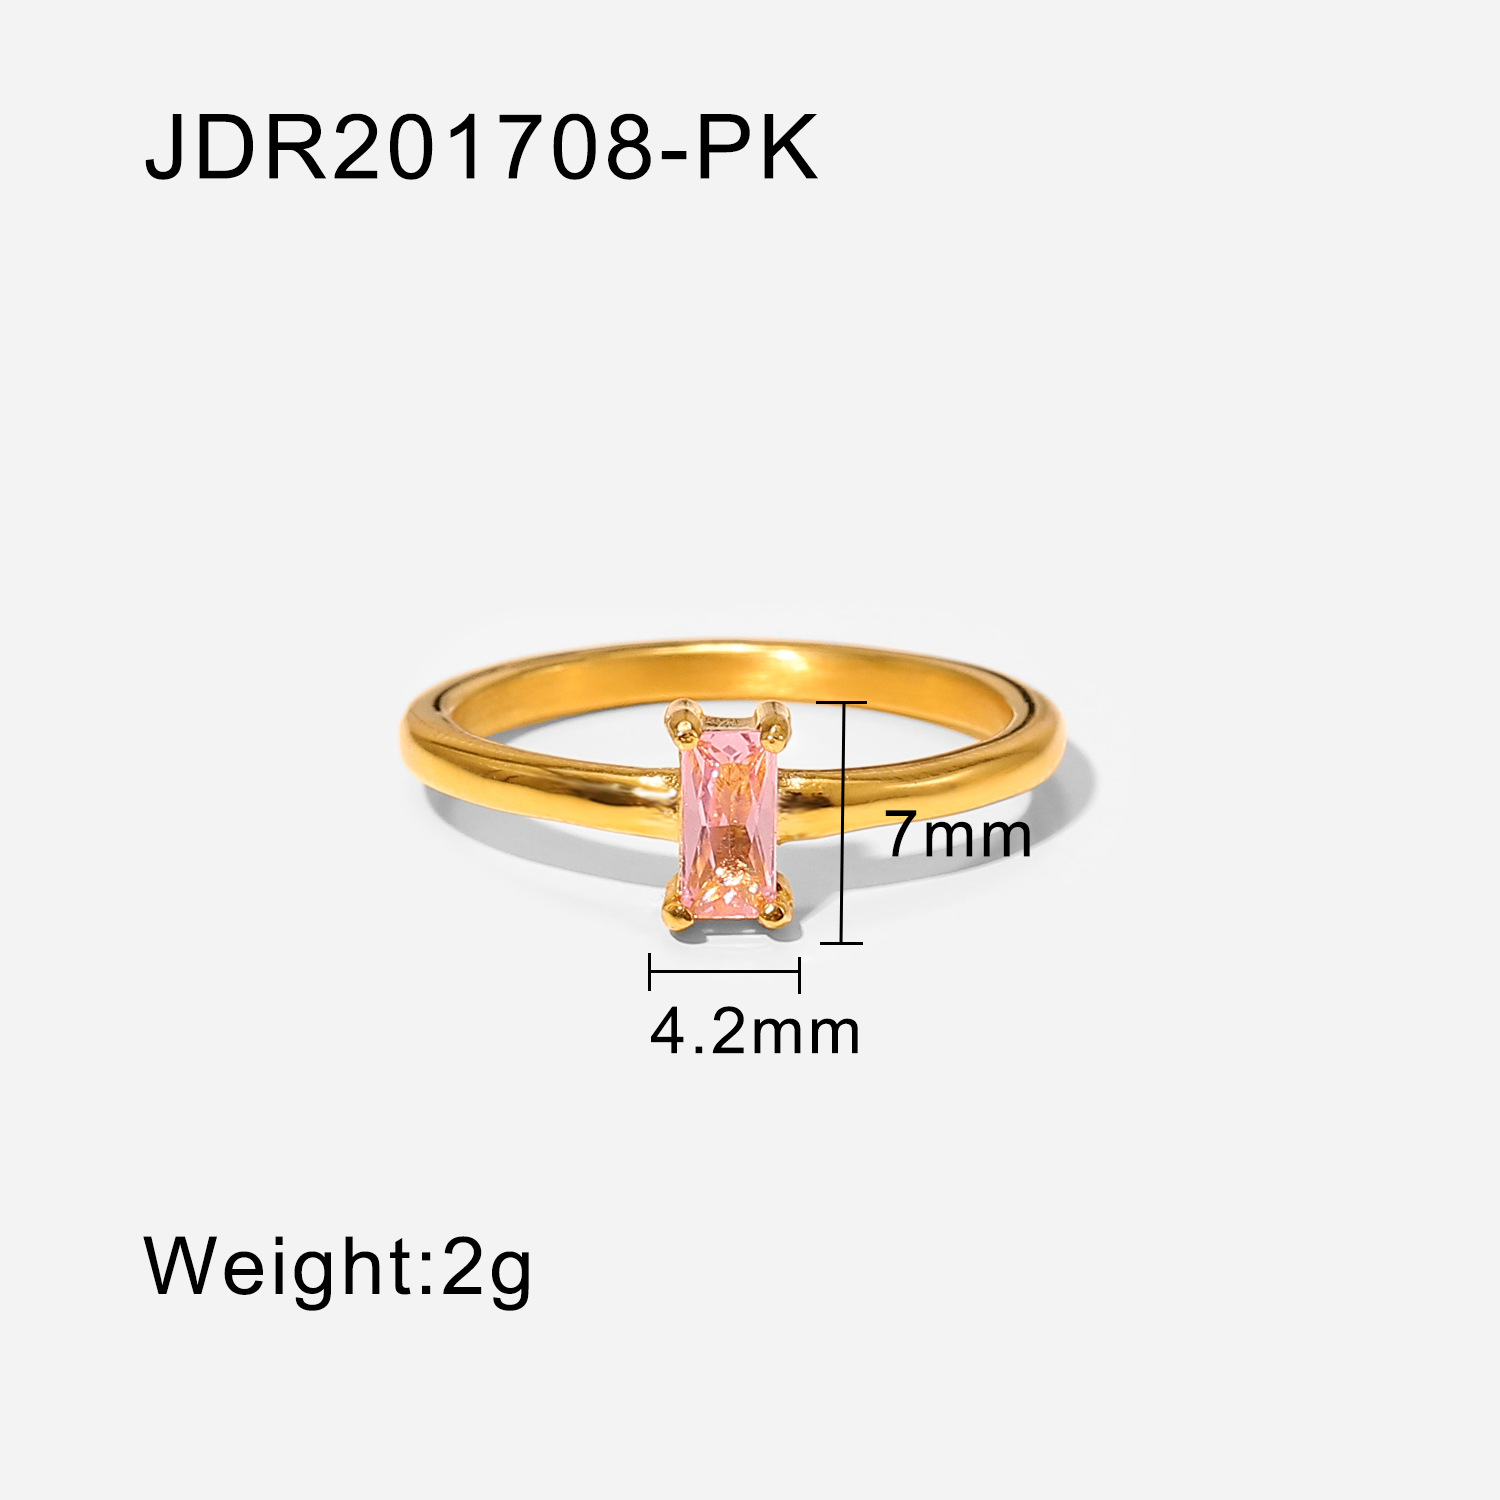 3:JDR201708-PK